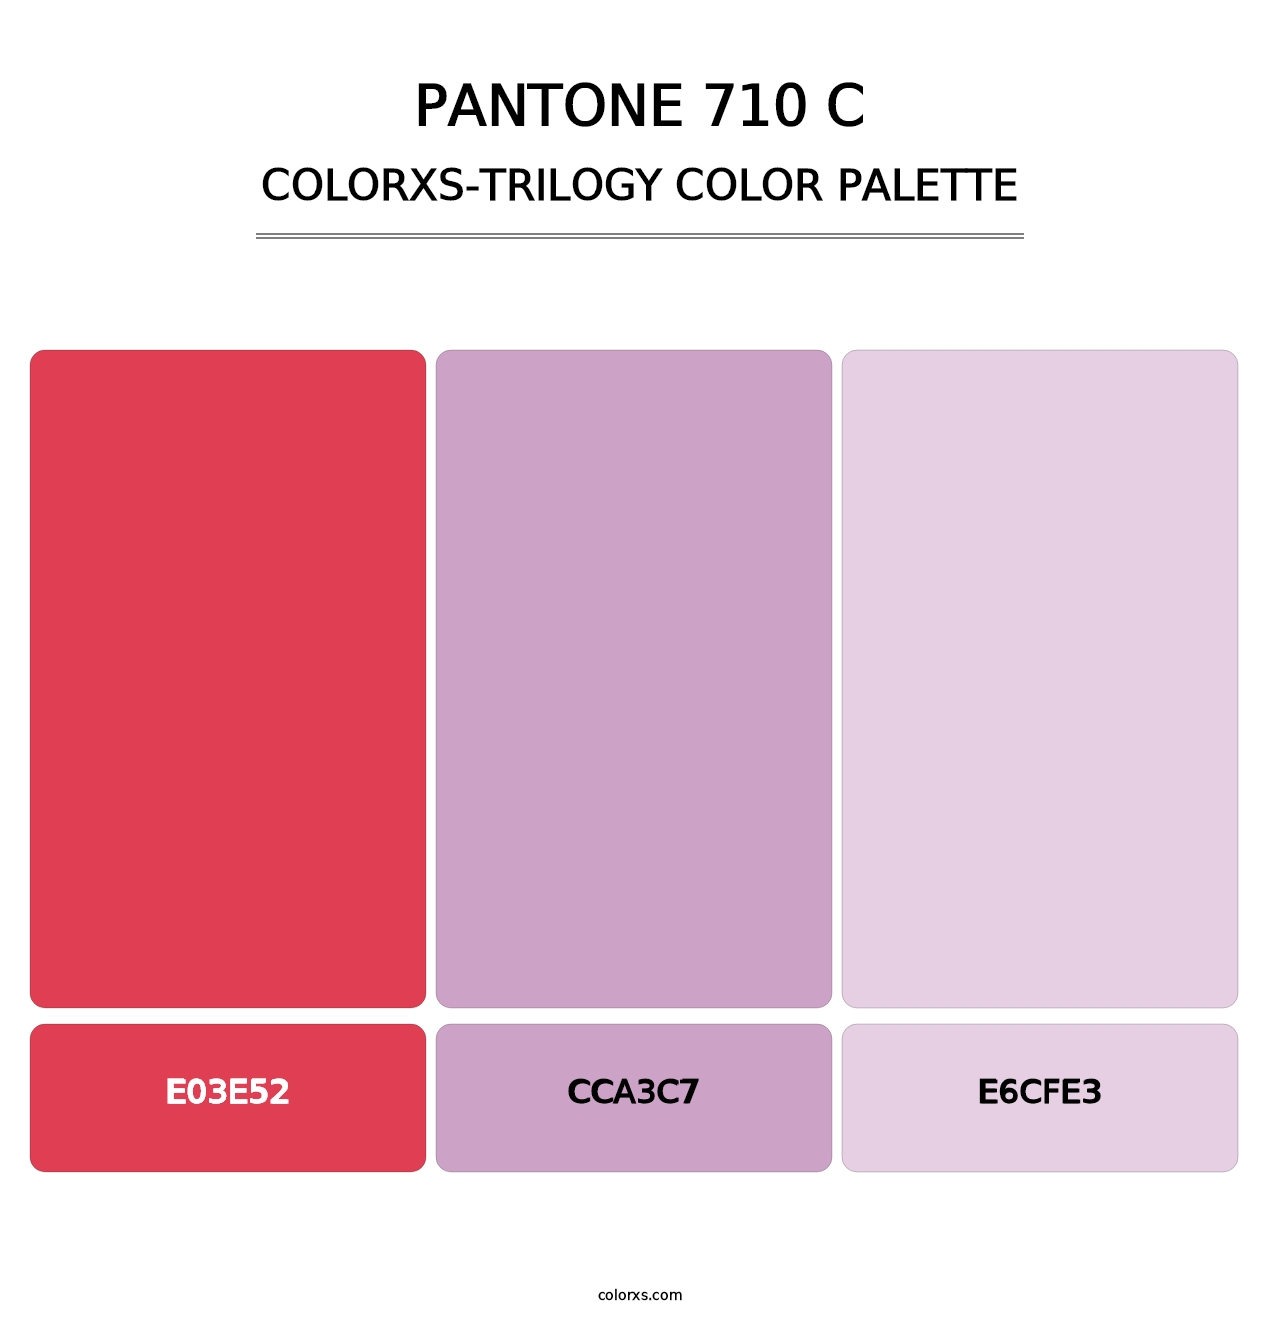 PANTONE 710 C - Colorxs Trilogy Palette